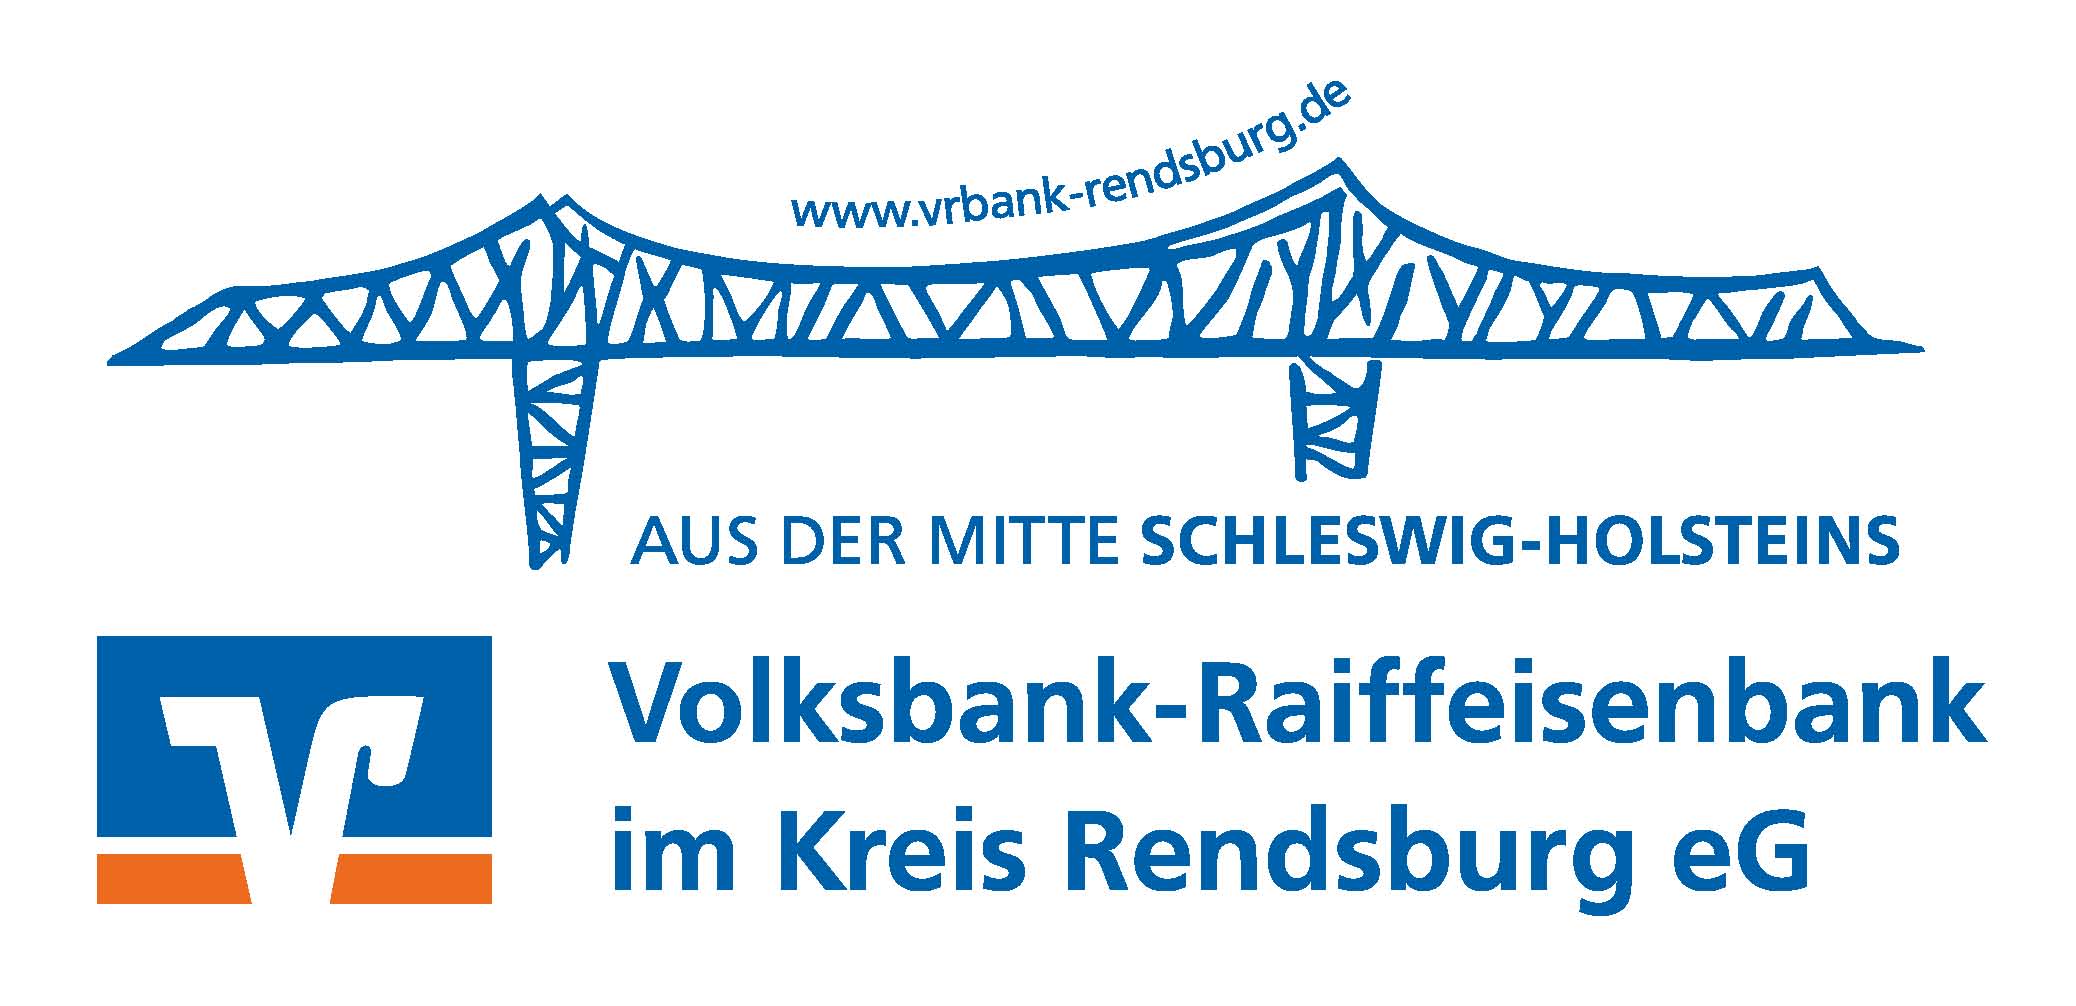 Volksbank-Raiffeisenbank im Kreis Rendsburg eG